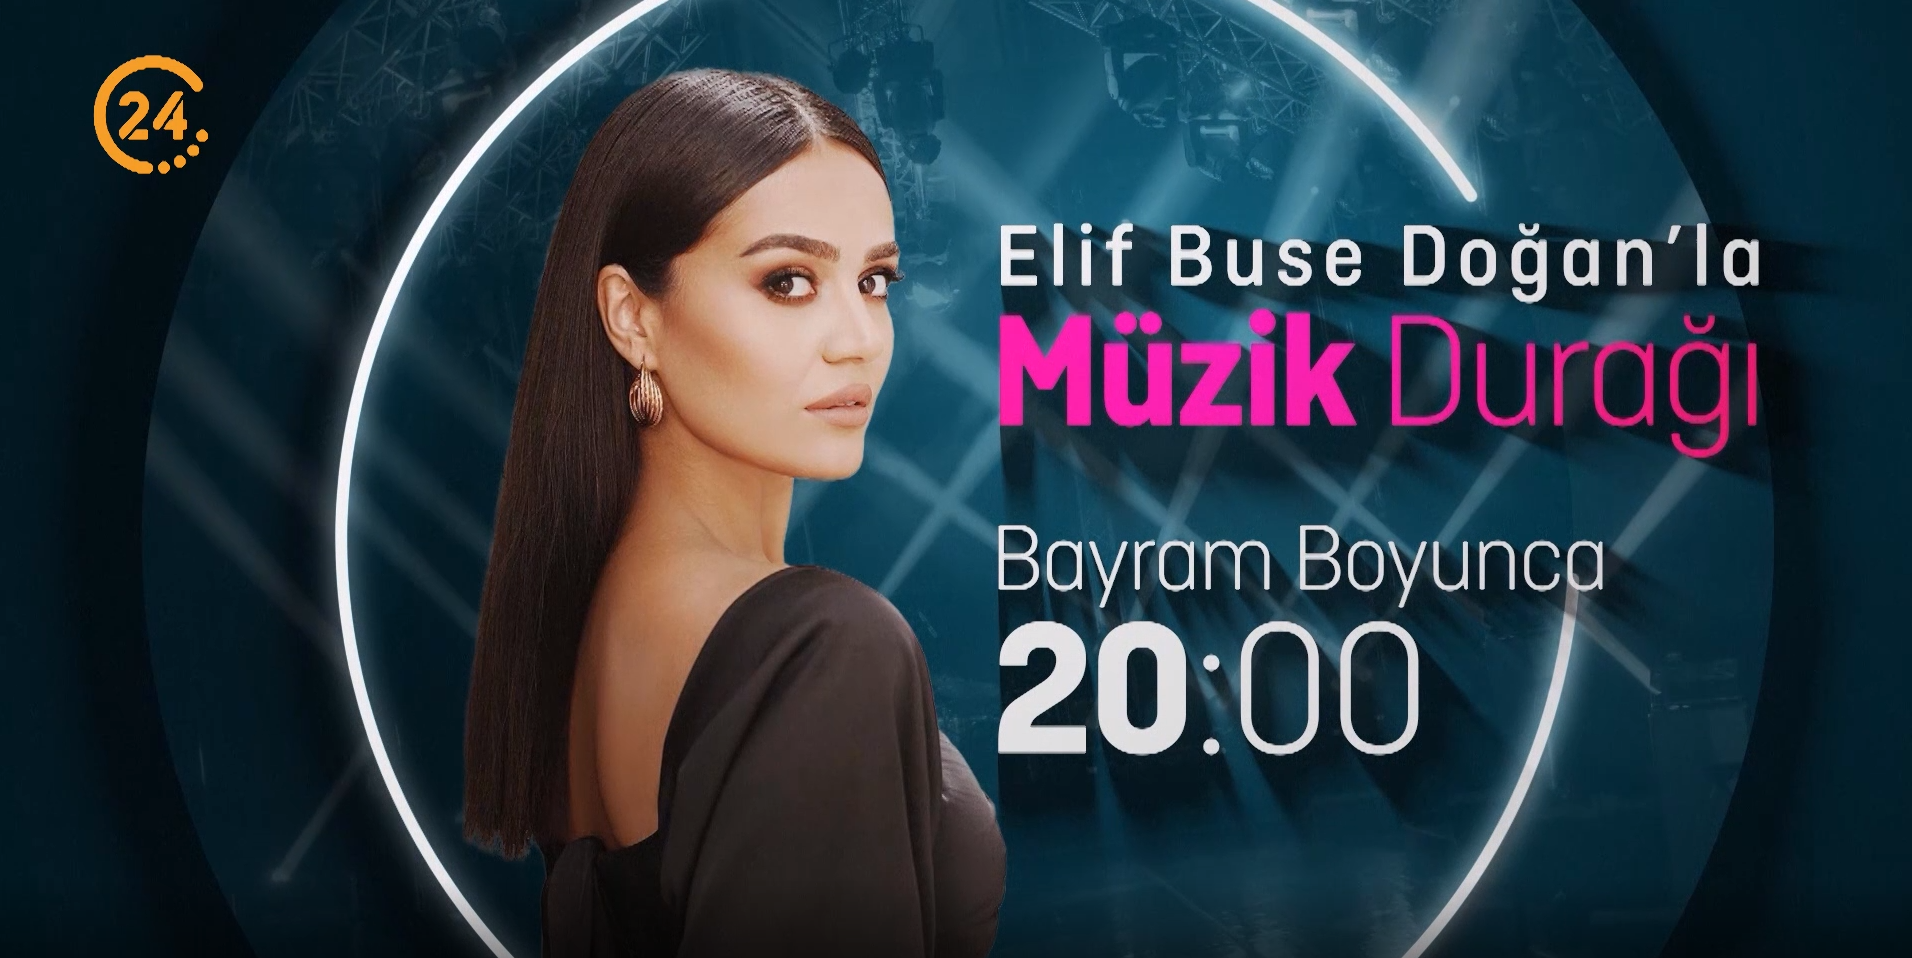 Bayram cokusu 24 TV'de yaanyor! Elif Buse Doan'la Mzik Dura